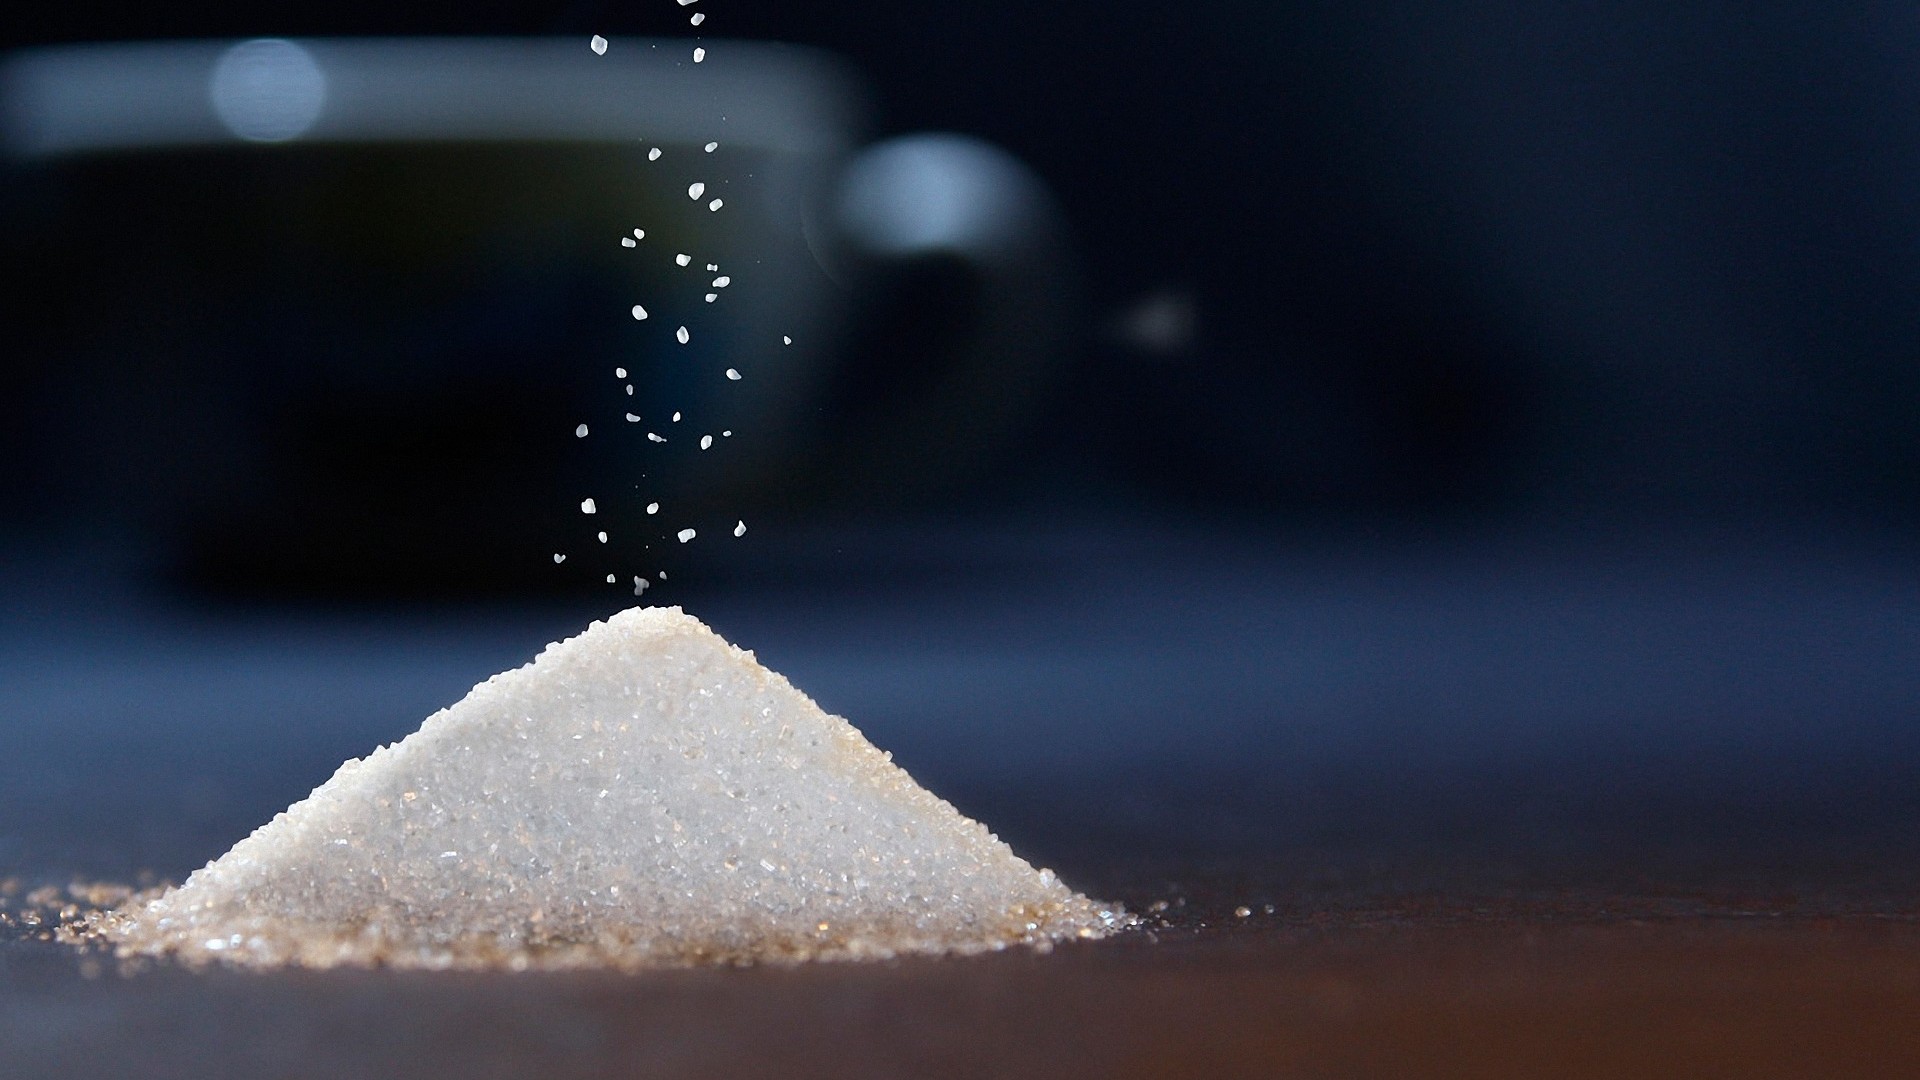 Foto de capa do artigo "Açúcar vicia? Saiba os malefícios de consumir em excesso"